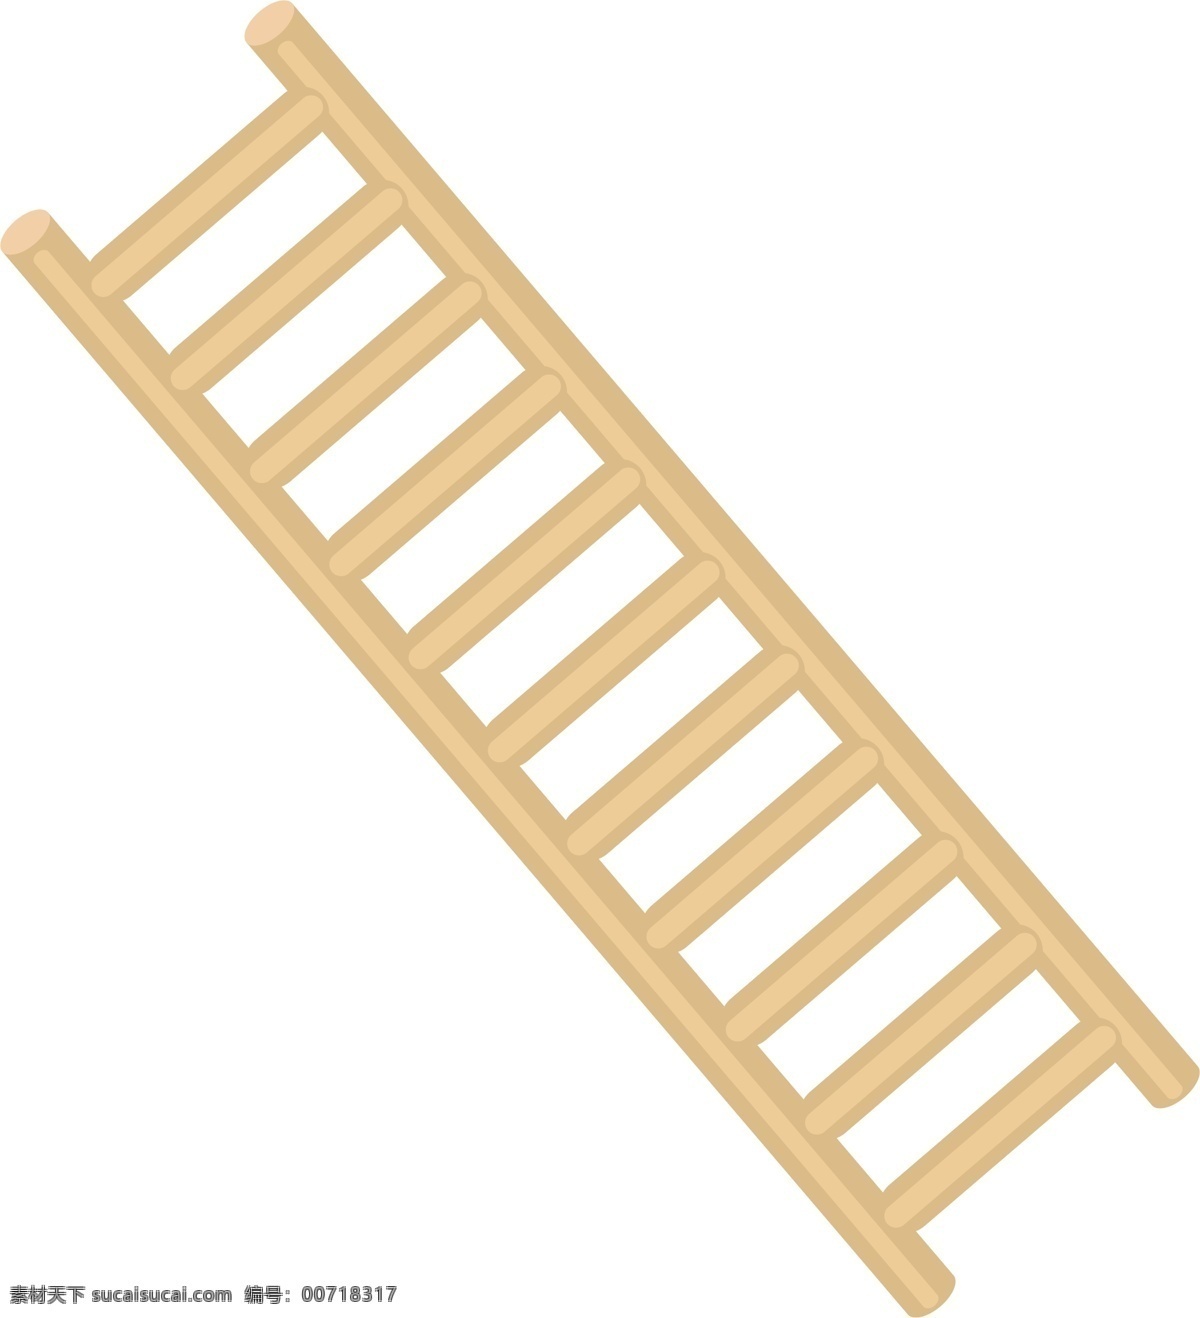 棕色 木质 楼梯 插画 木质的楼梯 卡通插画 楼梯插画 建筑楼梯 房子楼梯 木质楼梯 长长的楼梯